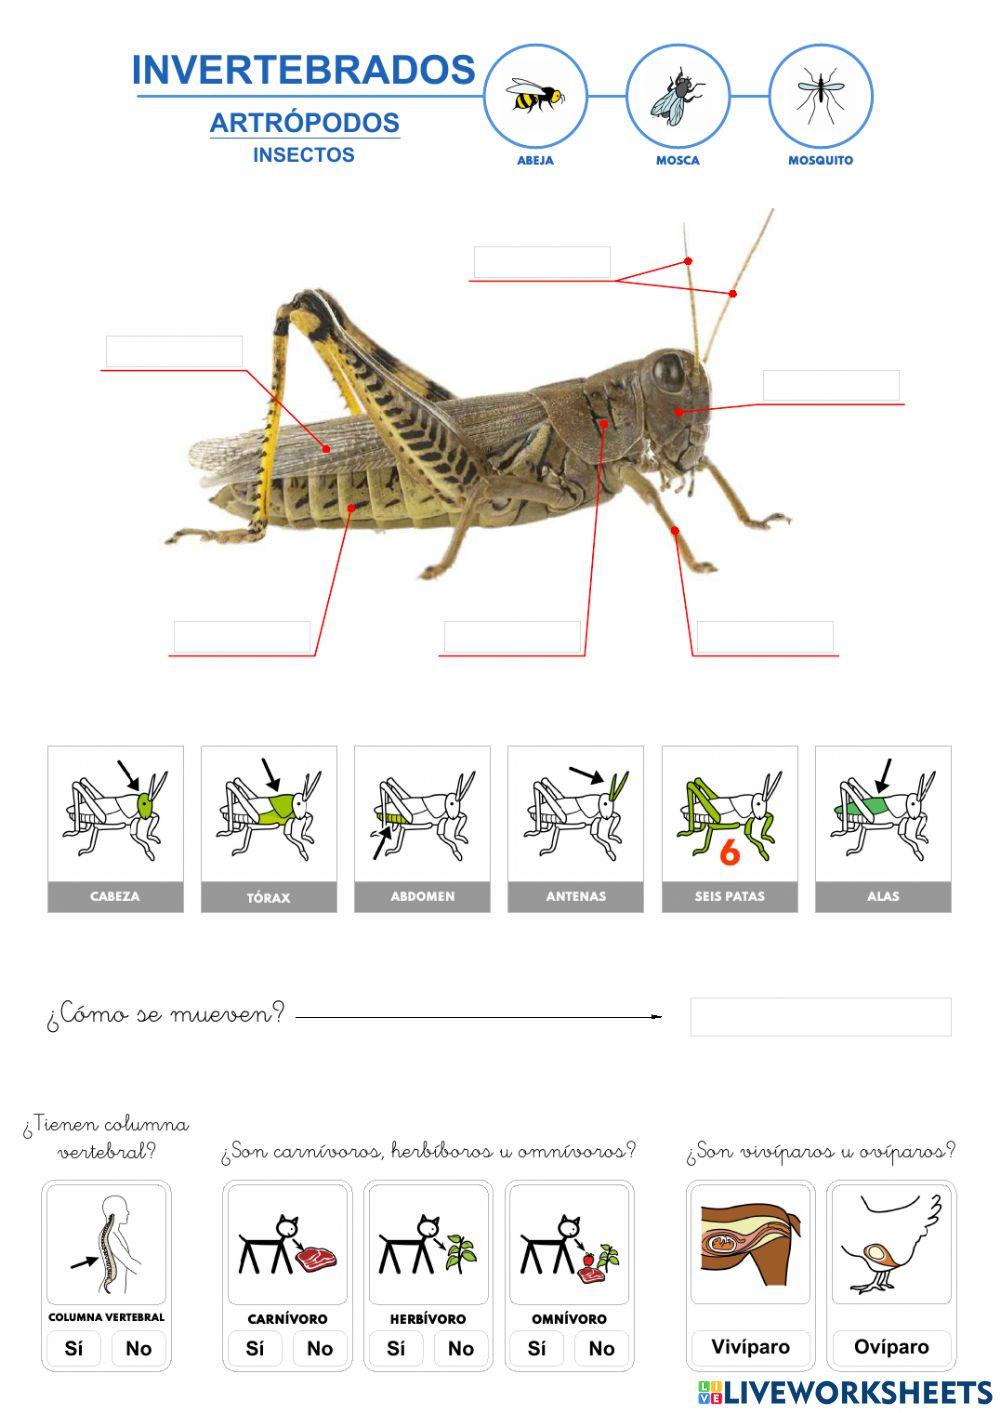 Invertebrados - Insectos